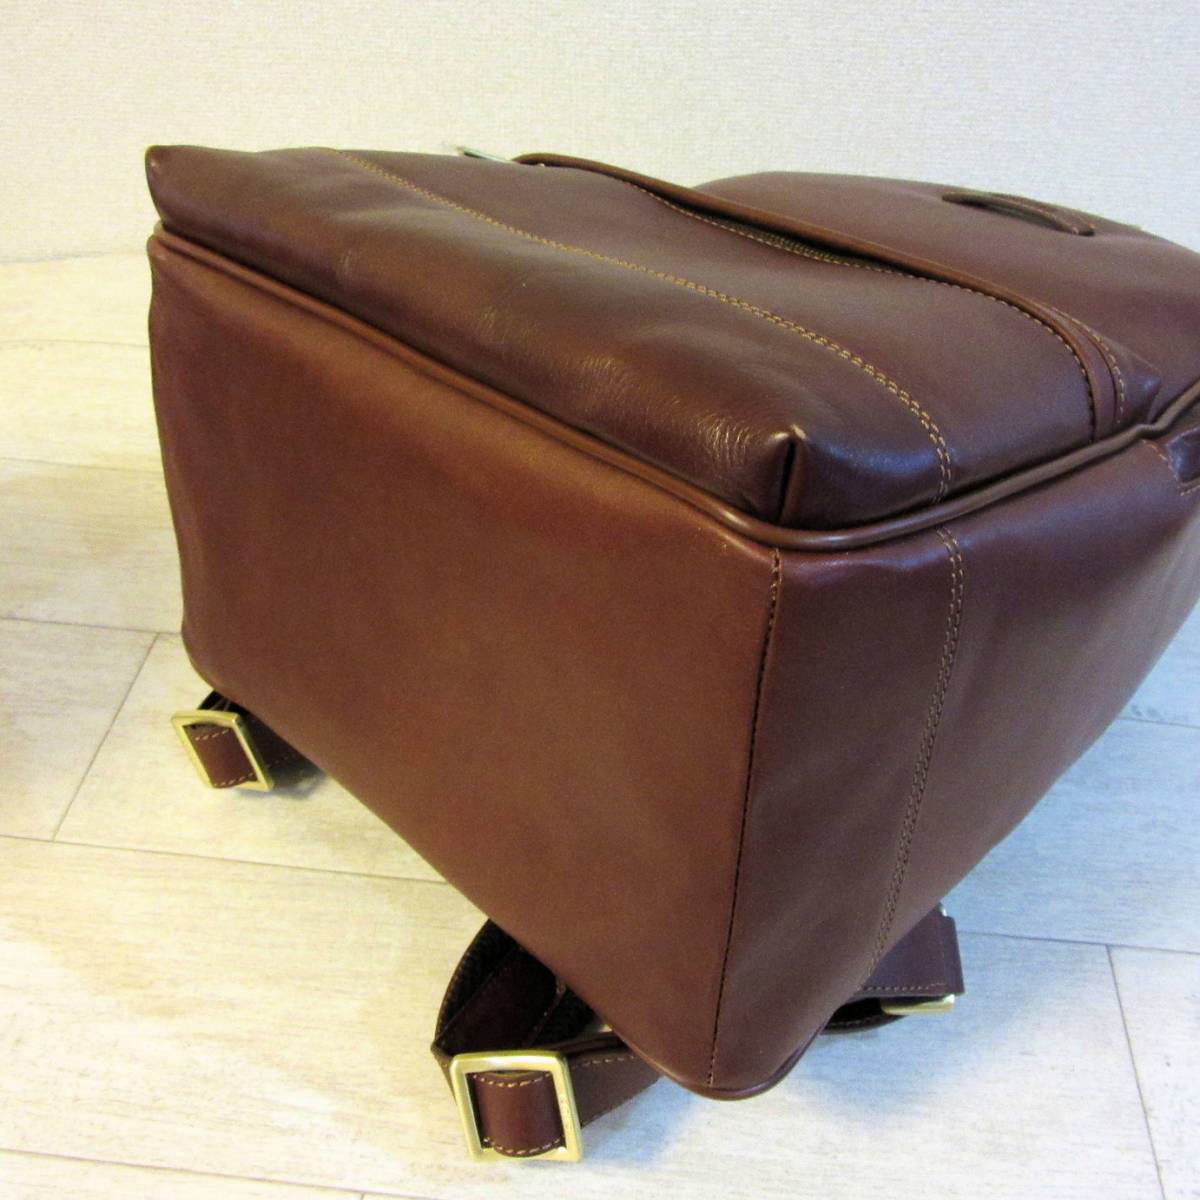 新品 タグ付き GIUDI イタリア製 欧州工房職人による高級バッグ 本革 レザー リュックサック バックパック 鞄 茶色 ブラウン メンズ_画像5